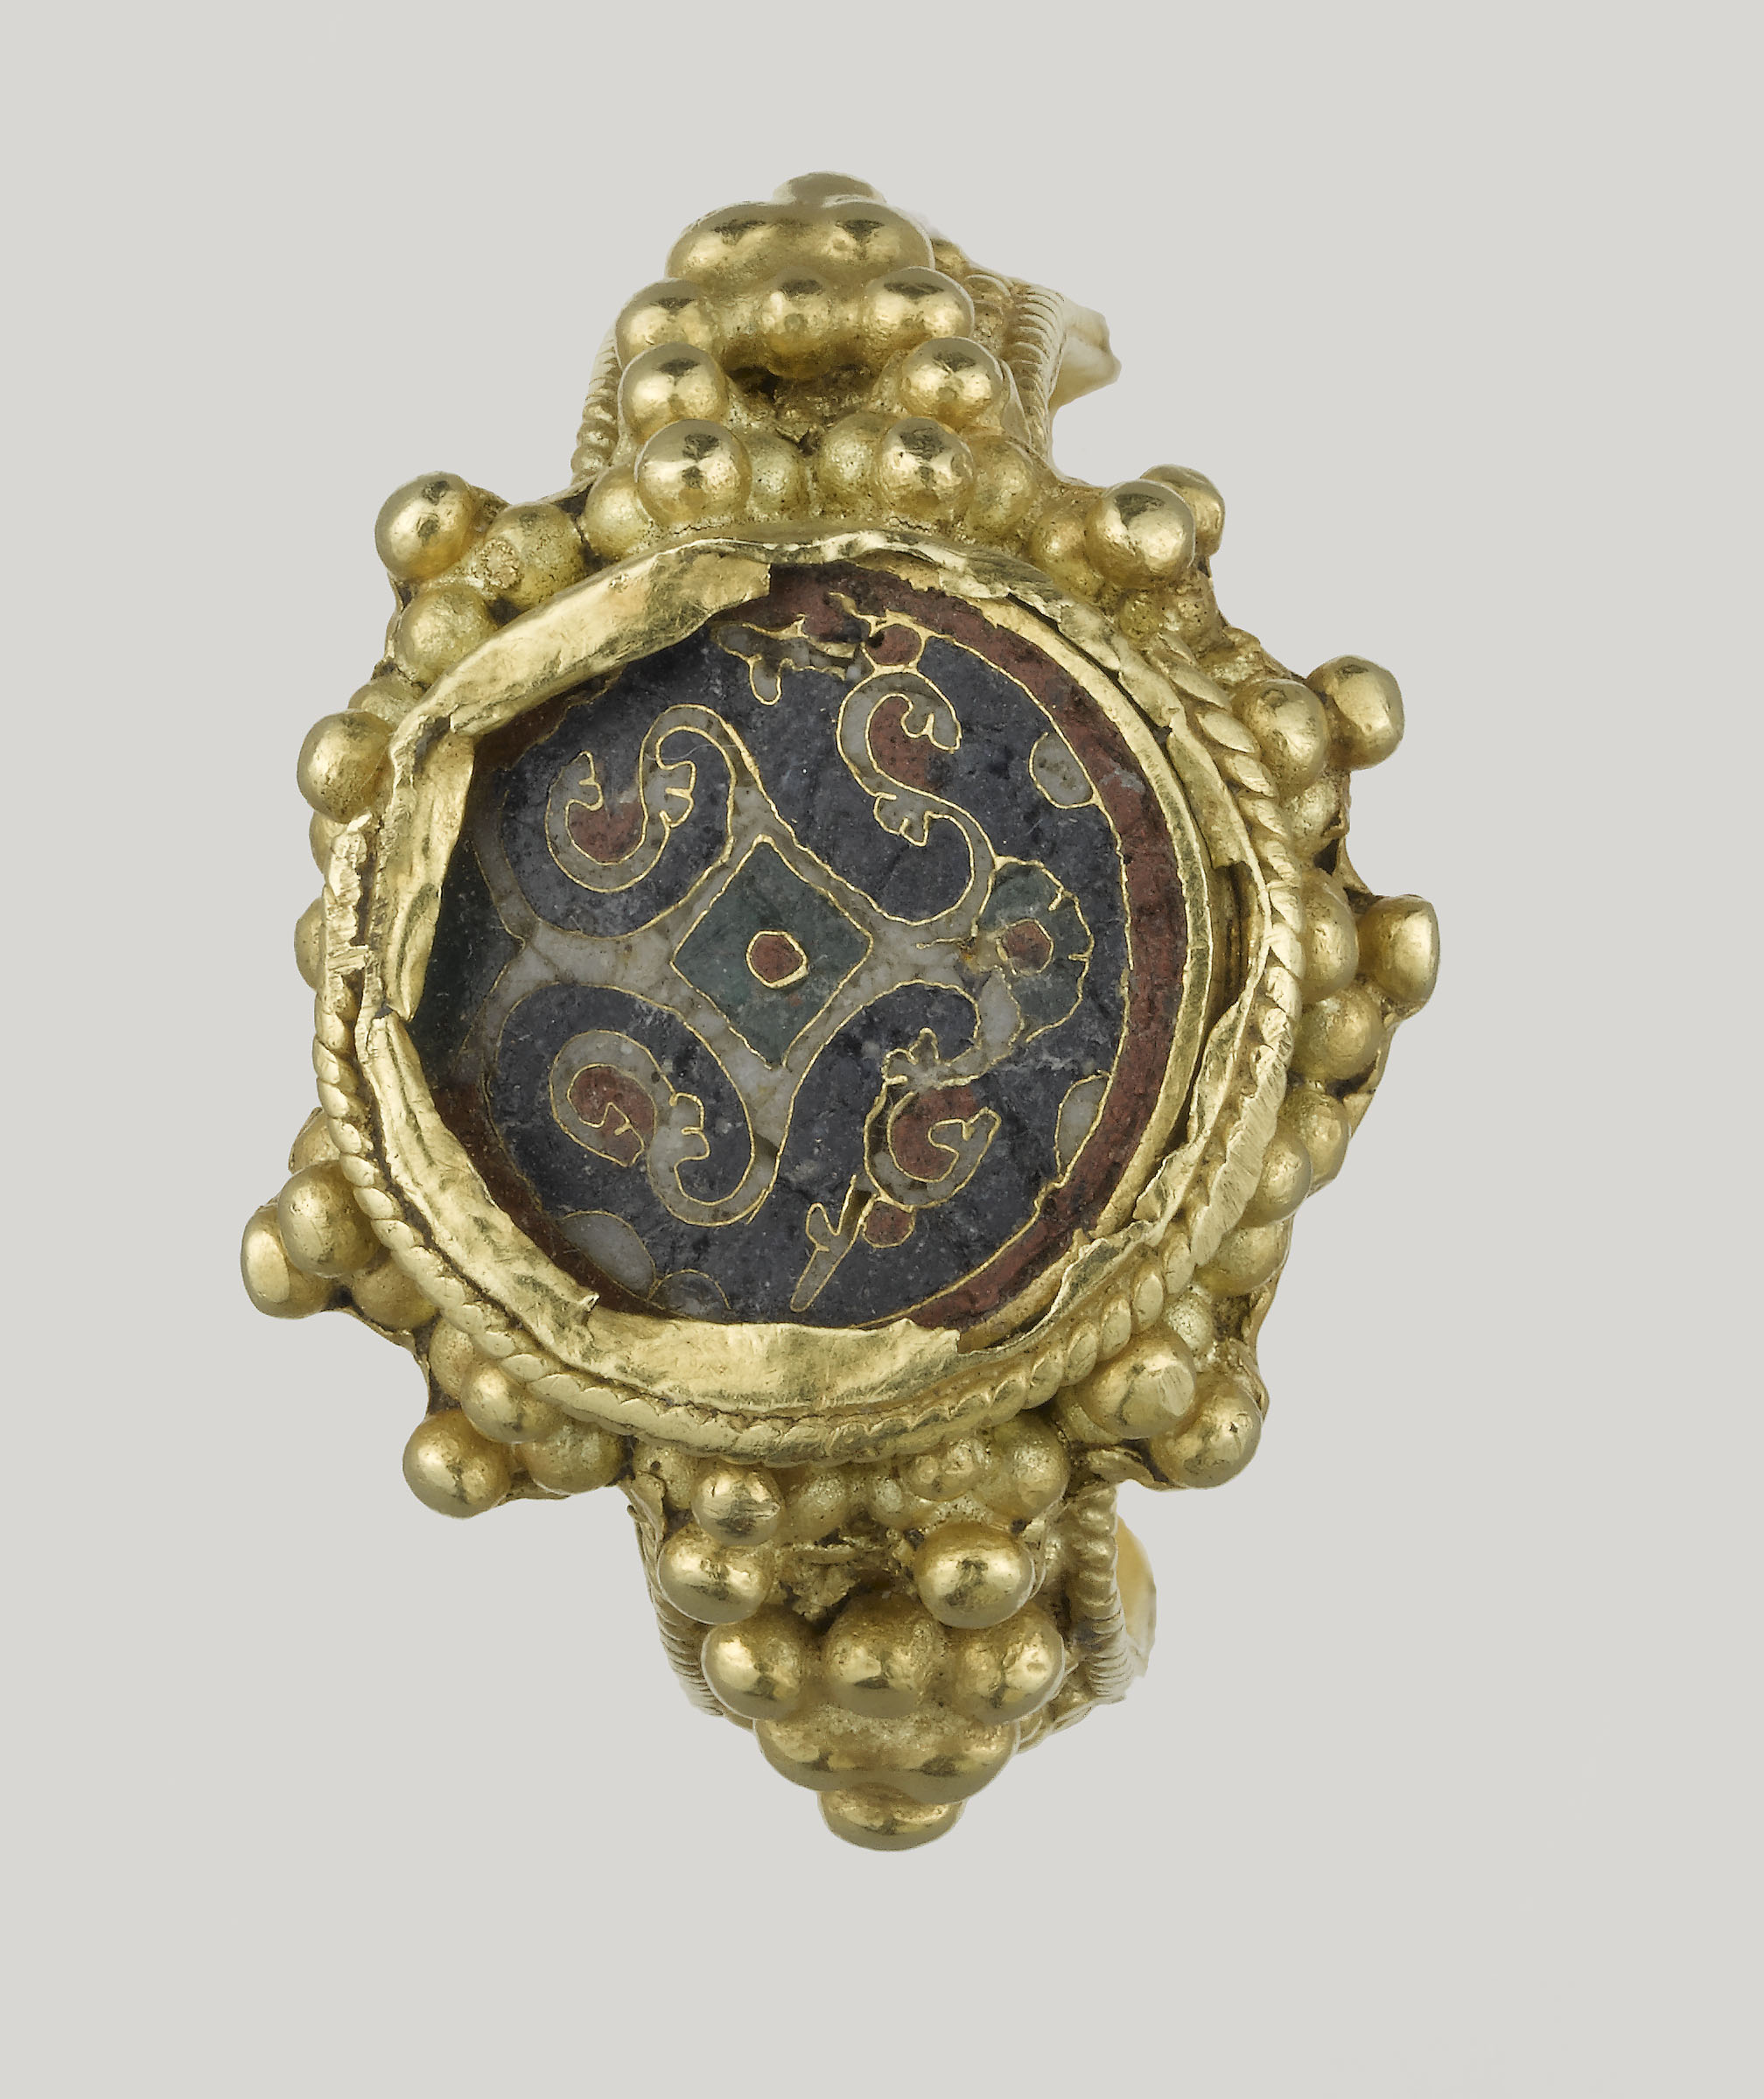 Ottonischer Ring by Unbekannter Künstler - um 800 Musée de Cluny